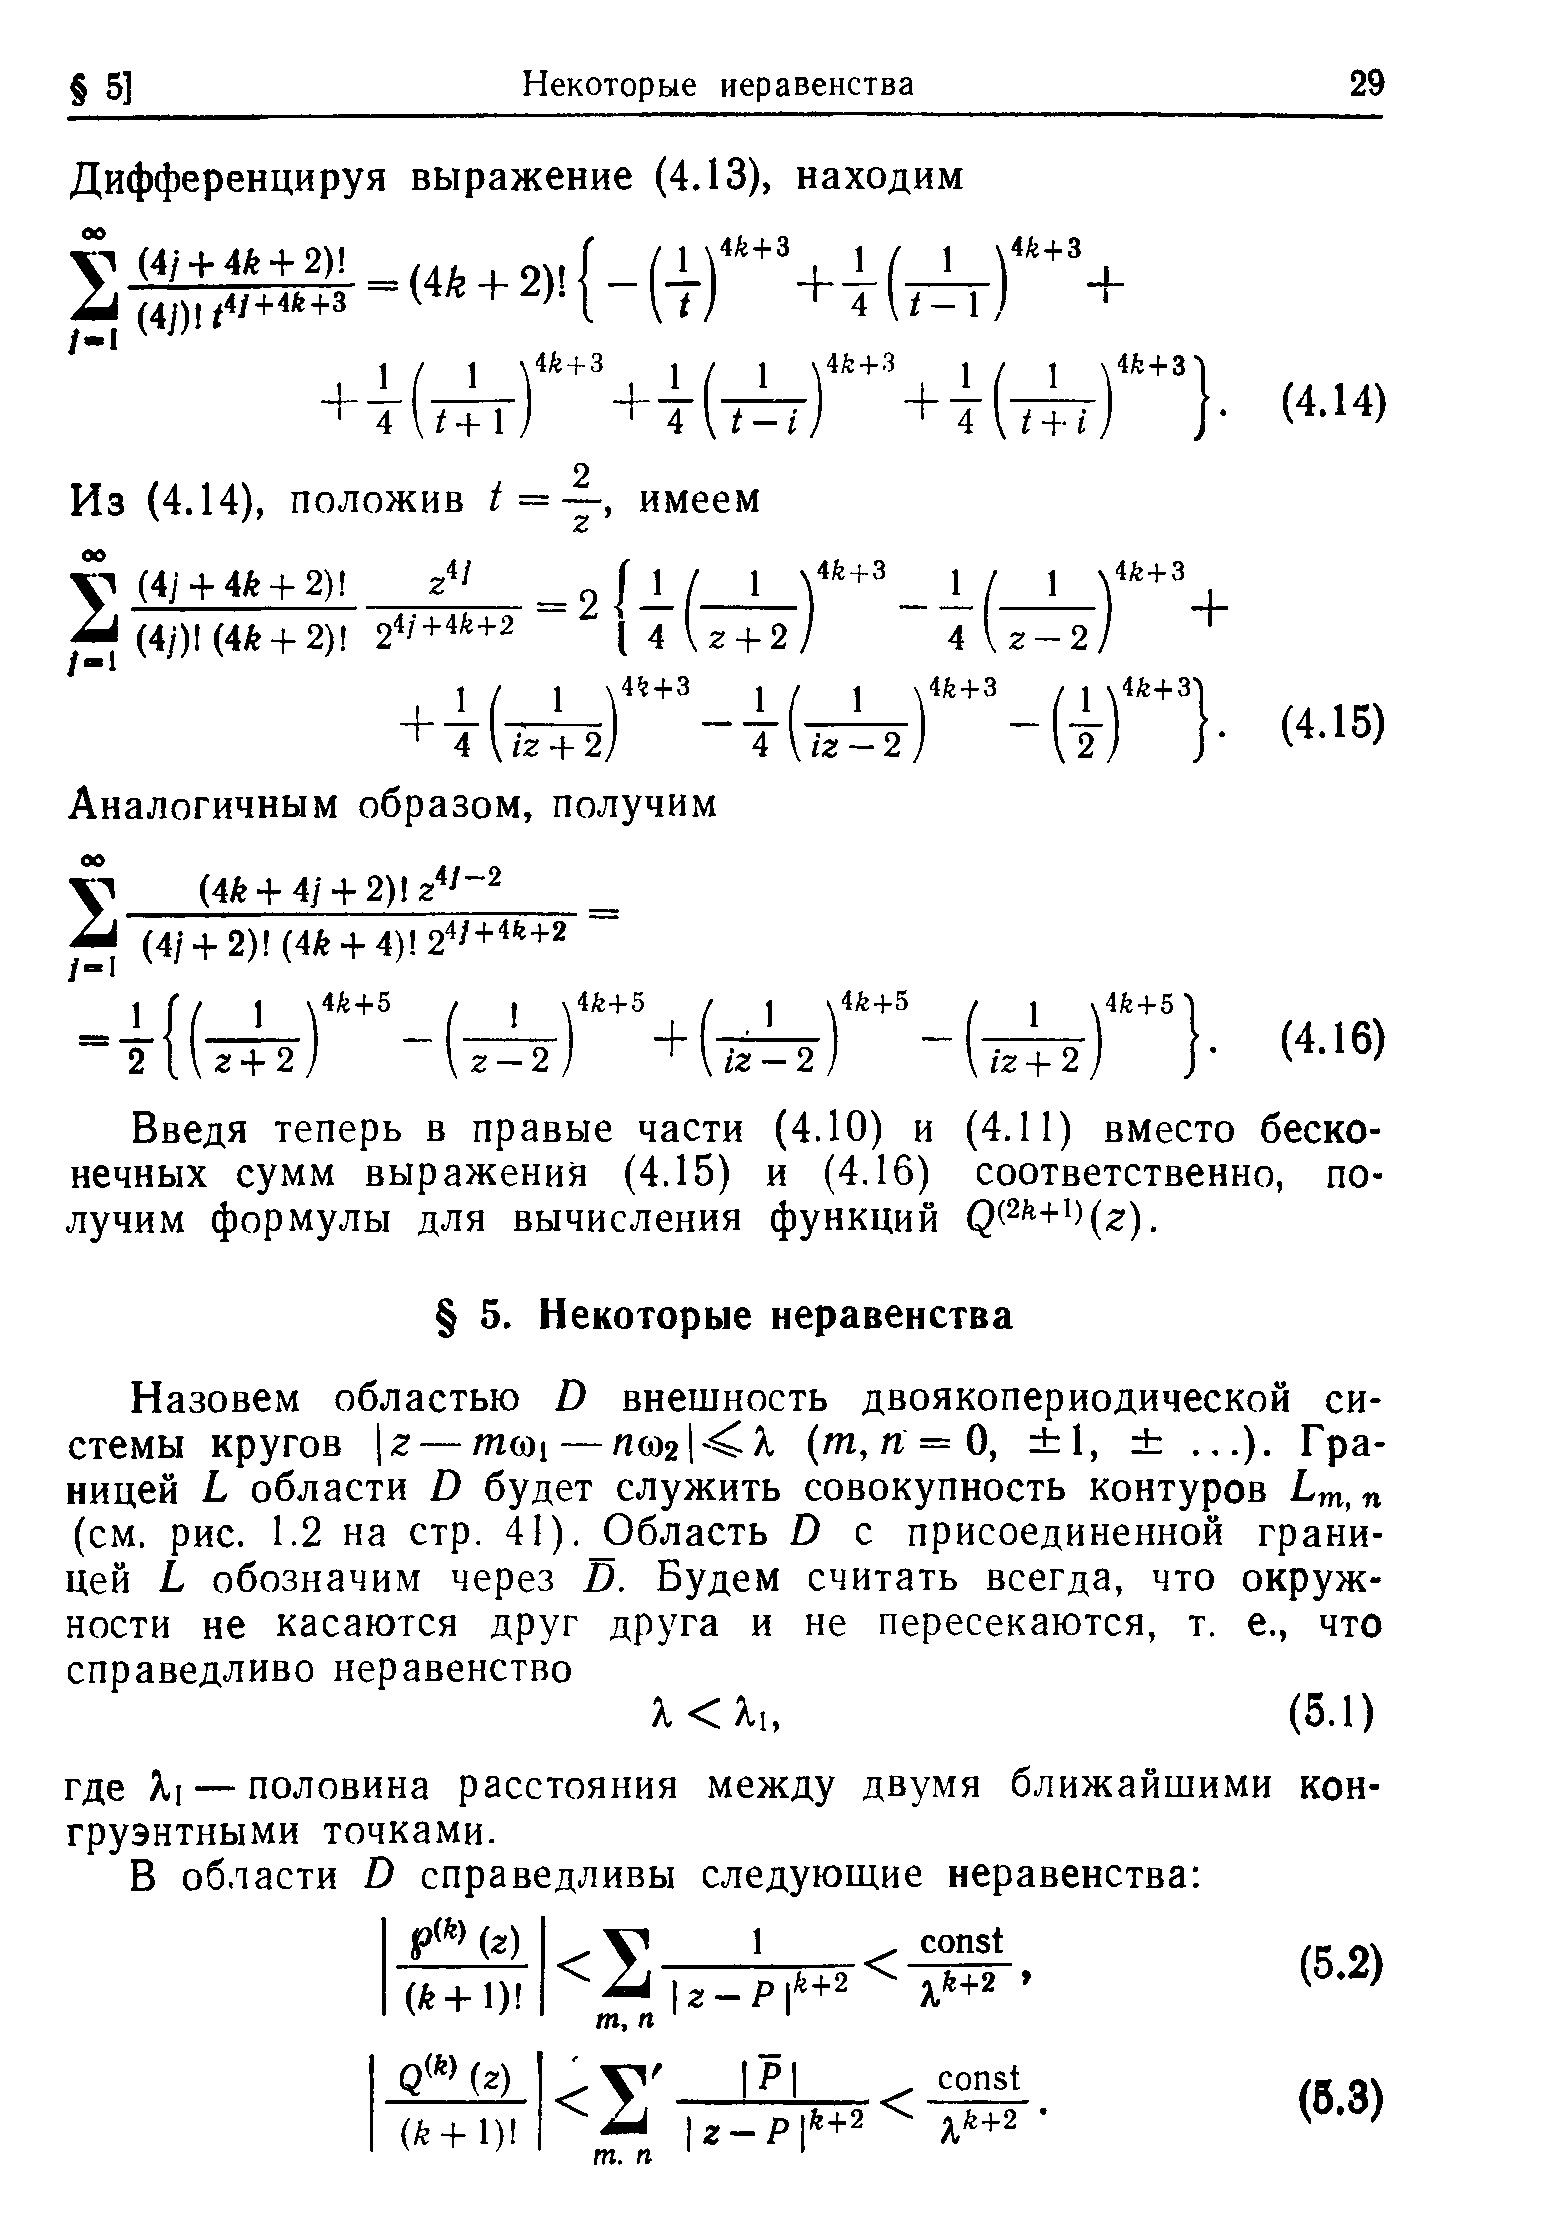 Введя теперь в правые части (4.10) и (4.11) вместо бесконечных сумм выражения (4.15) и (4.16) соответственно, получим формулы для вычисления функций р(2 + )(г).
